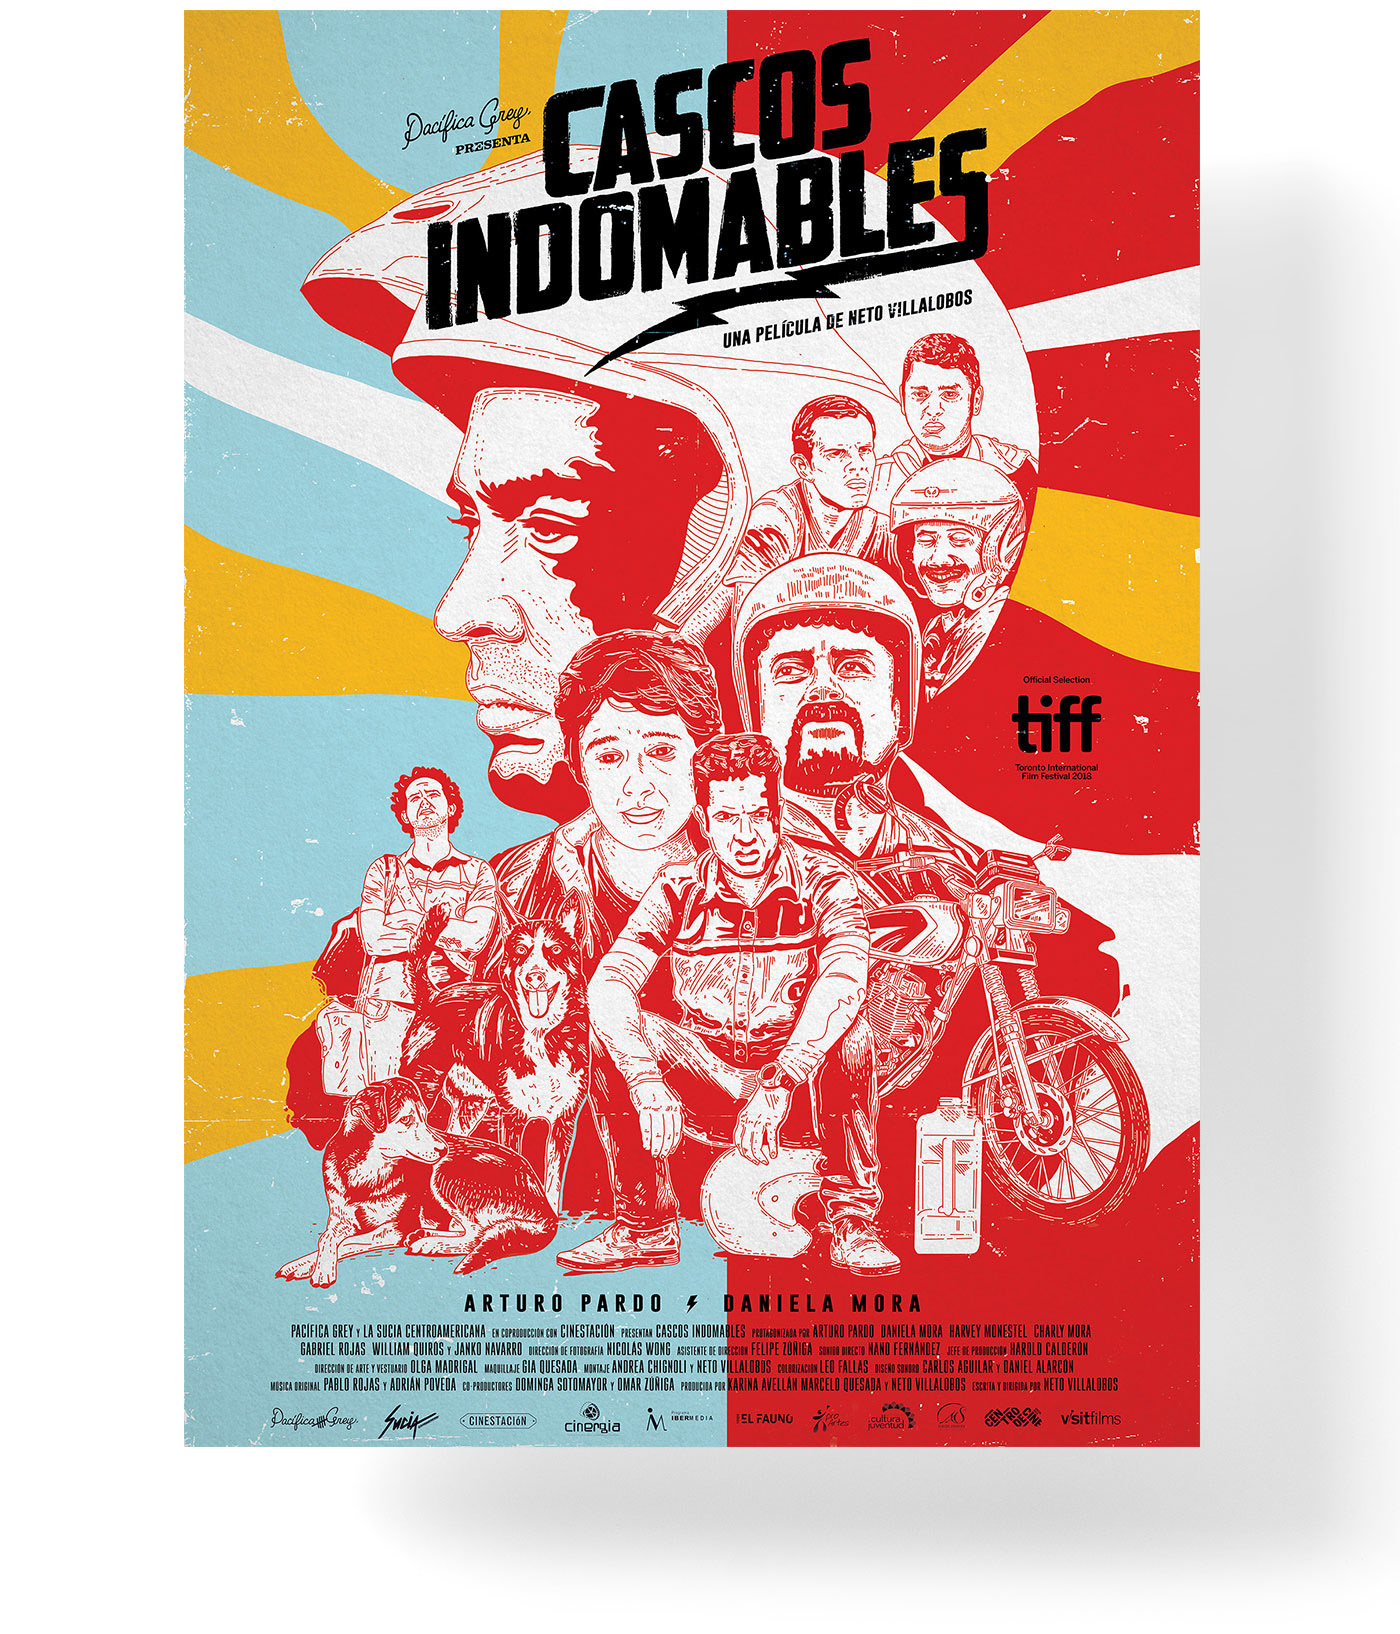 Procreate poster cine Costa Rica moto cascos dogs pelicula afiche identidad